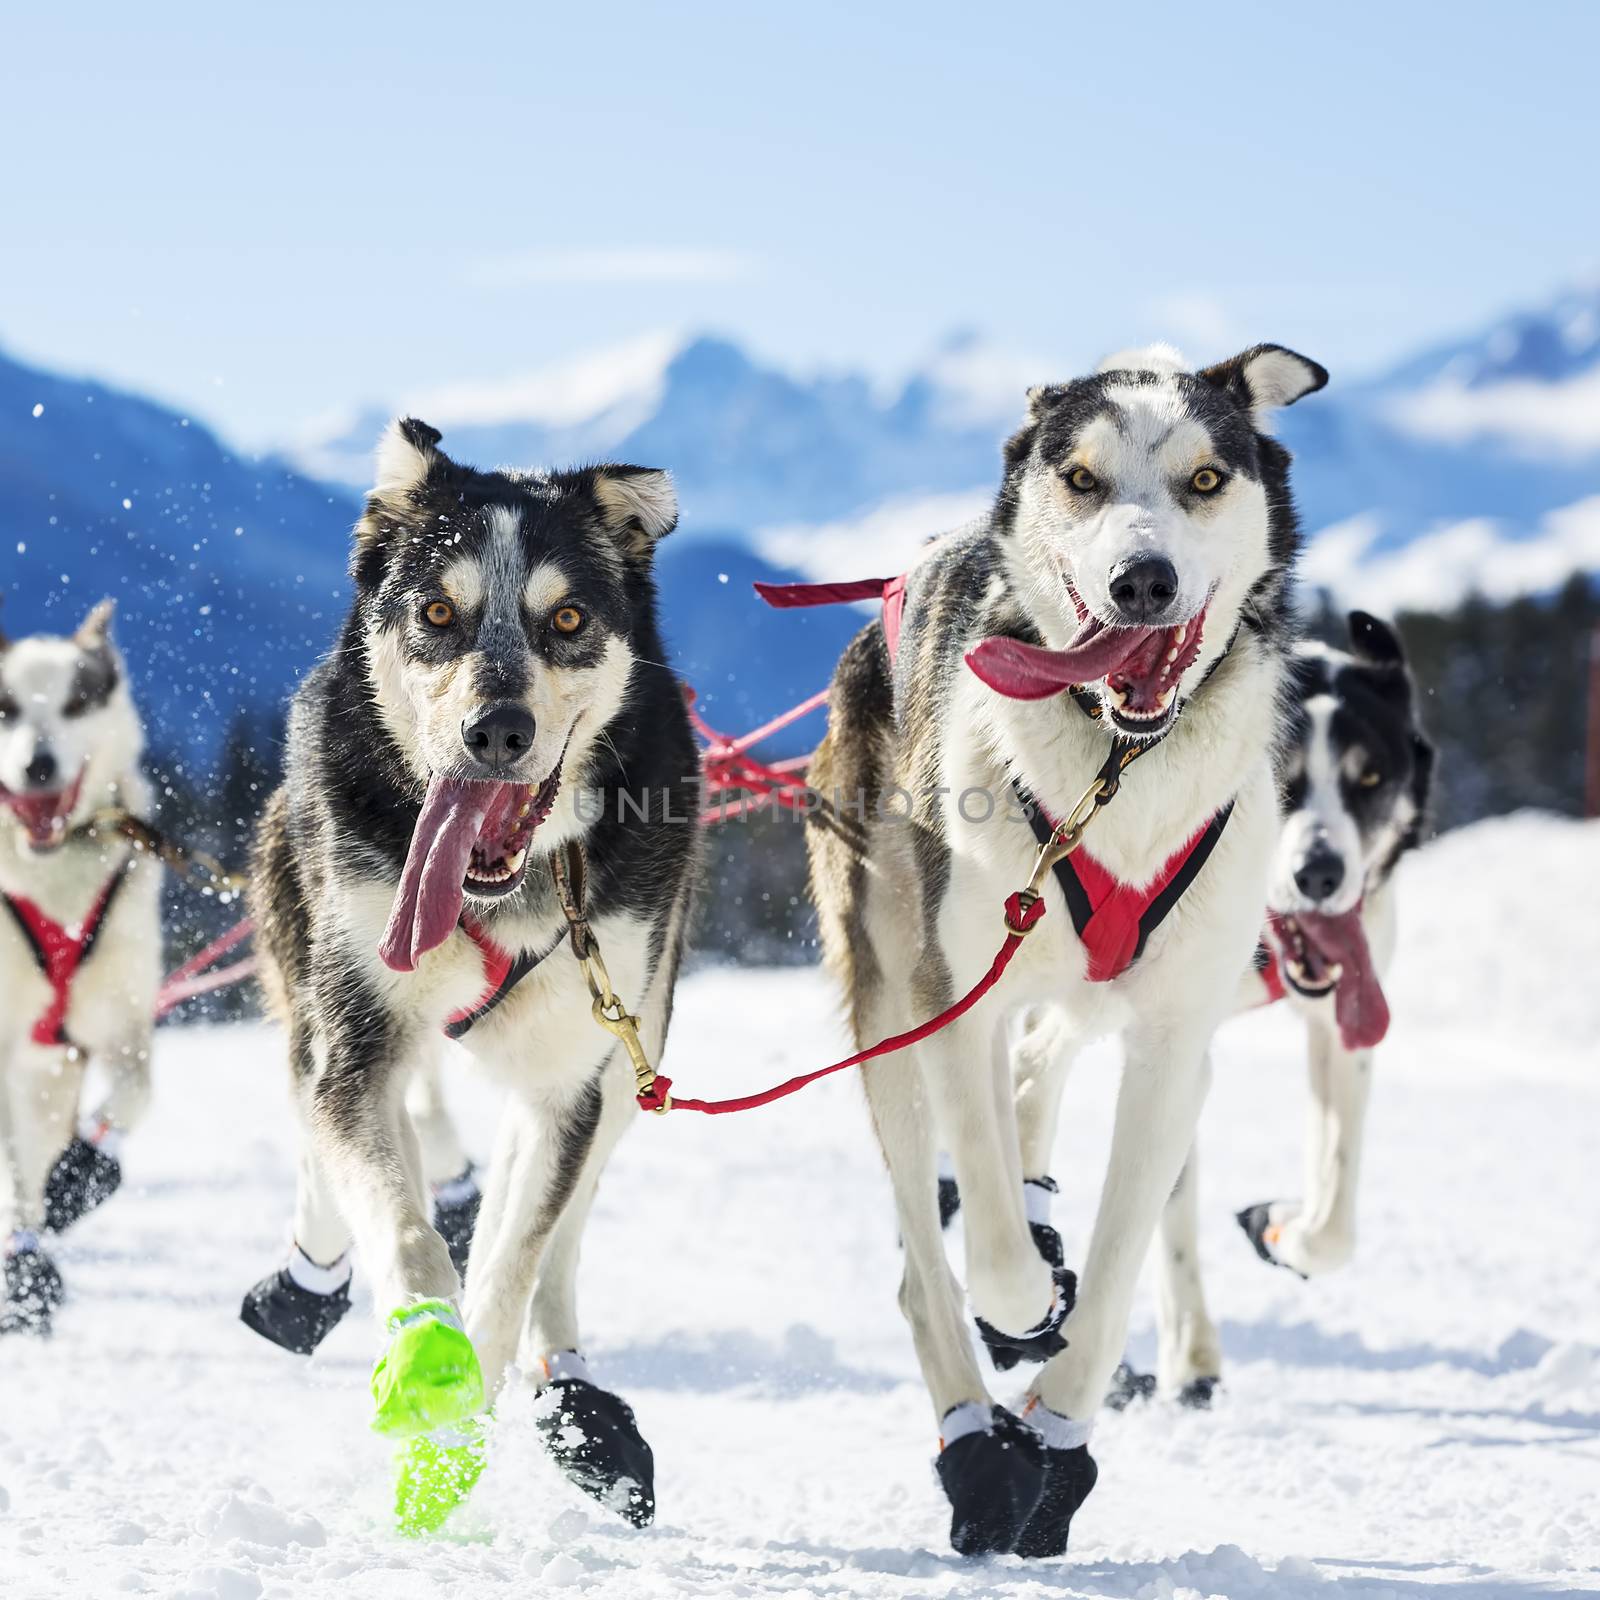 sled dog race on snow 